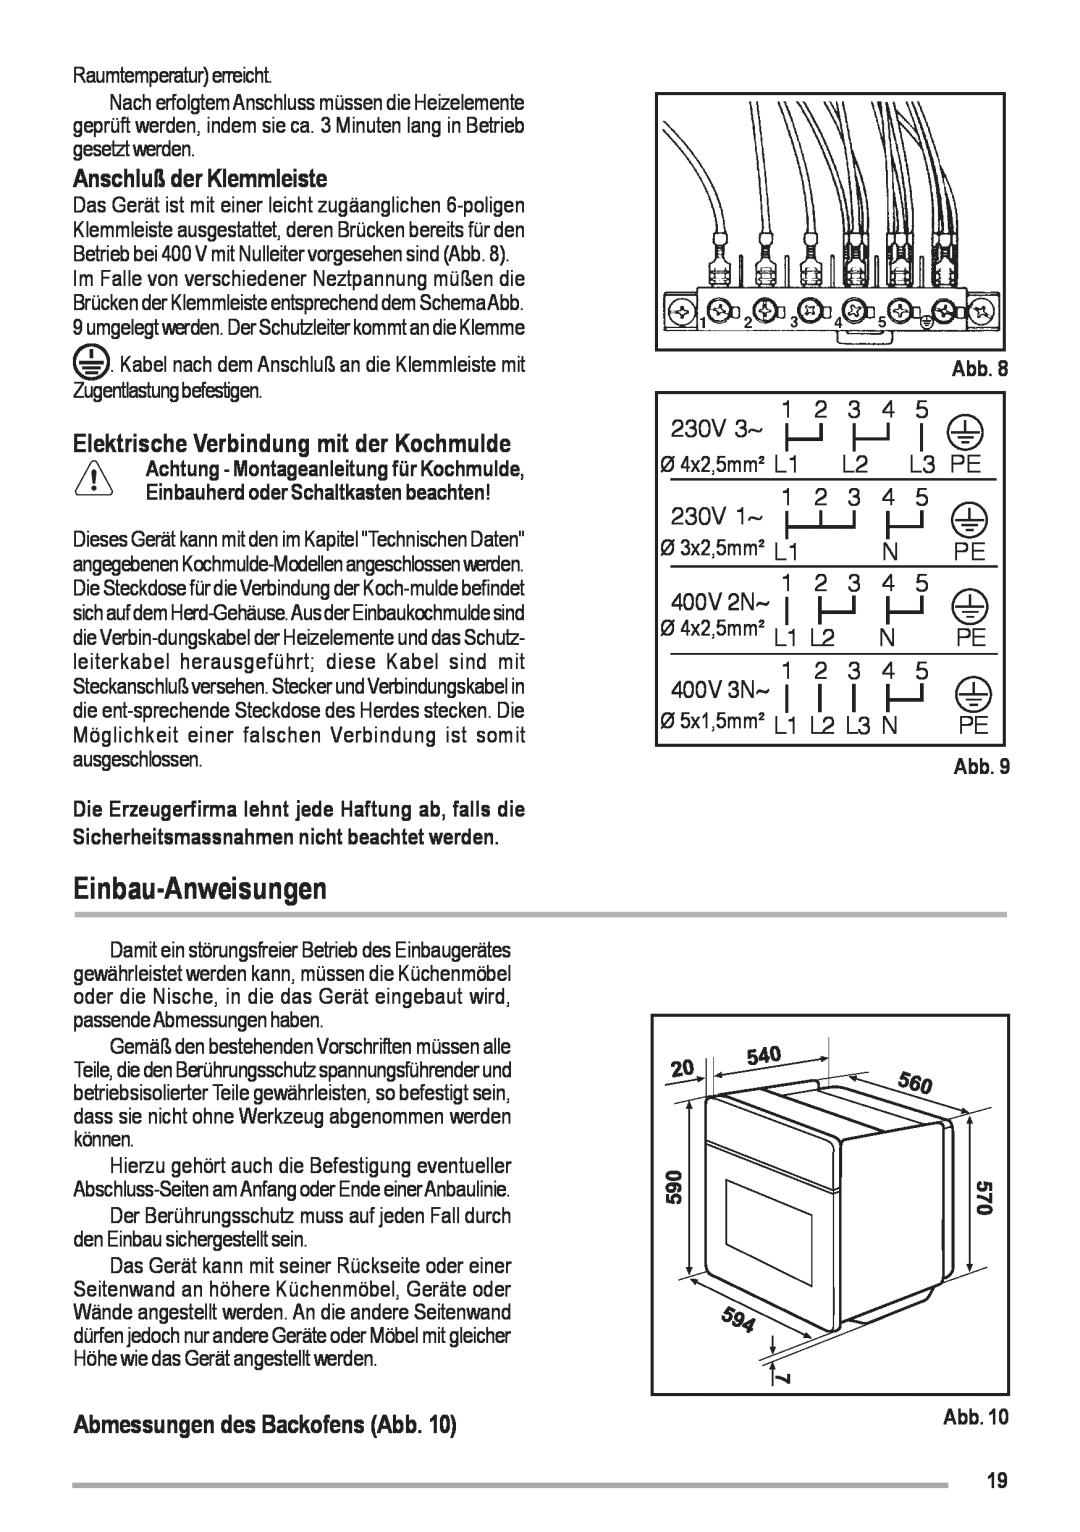 Zanussi ZOU 461 Einbau-Anweisungen, Anschluß der Klemmleiste, Elektrische Verbindung mit der Kochmulde, 230V 3~, L3 PE 